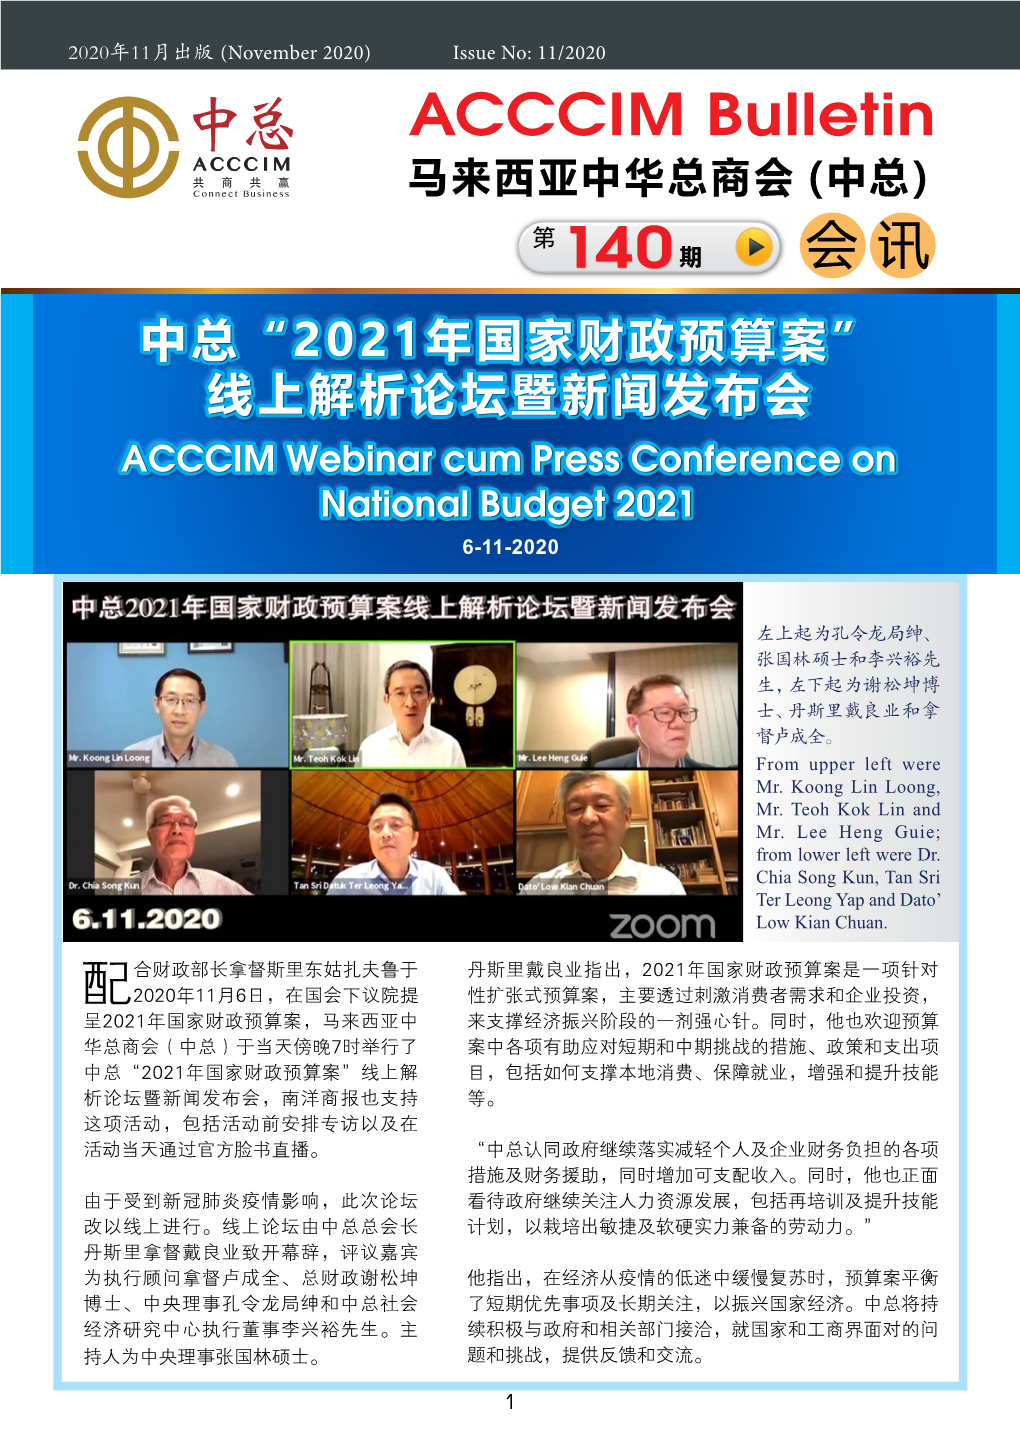 沙巴暨纳闽中华总商会主办“2021年国家财政预算案说明交流会” “Briefing and Interaction on National Budget 2021” Organised by the Sabah United Chinese Chambers of Commerce 14-11-2020